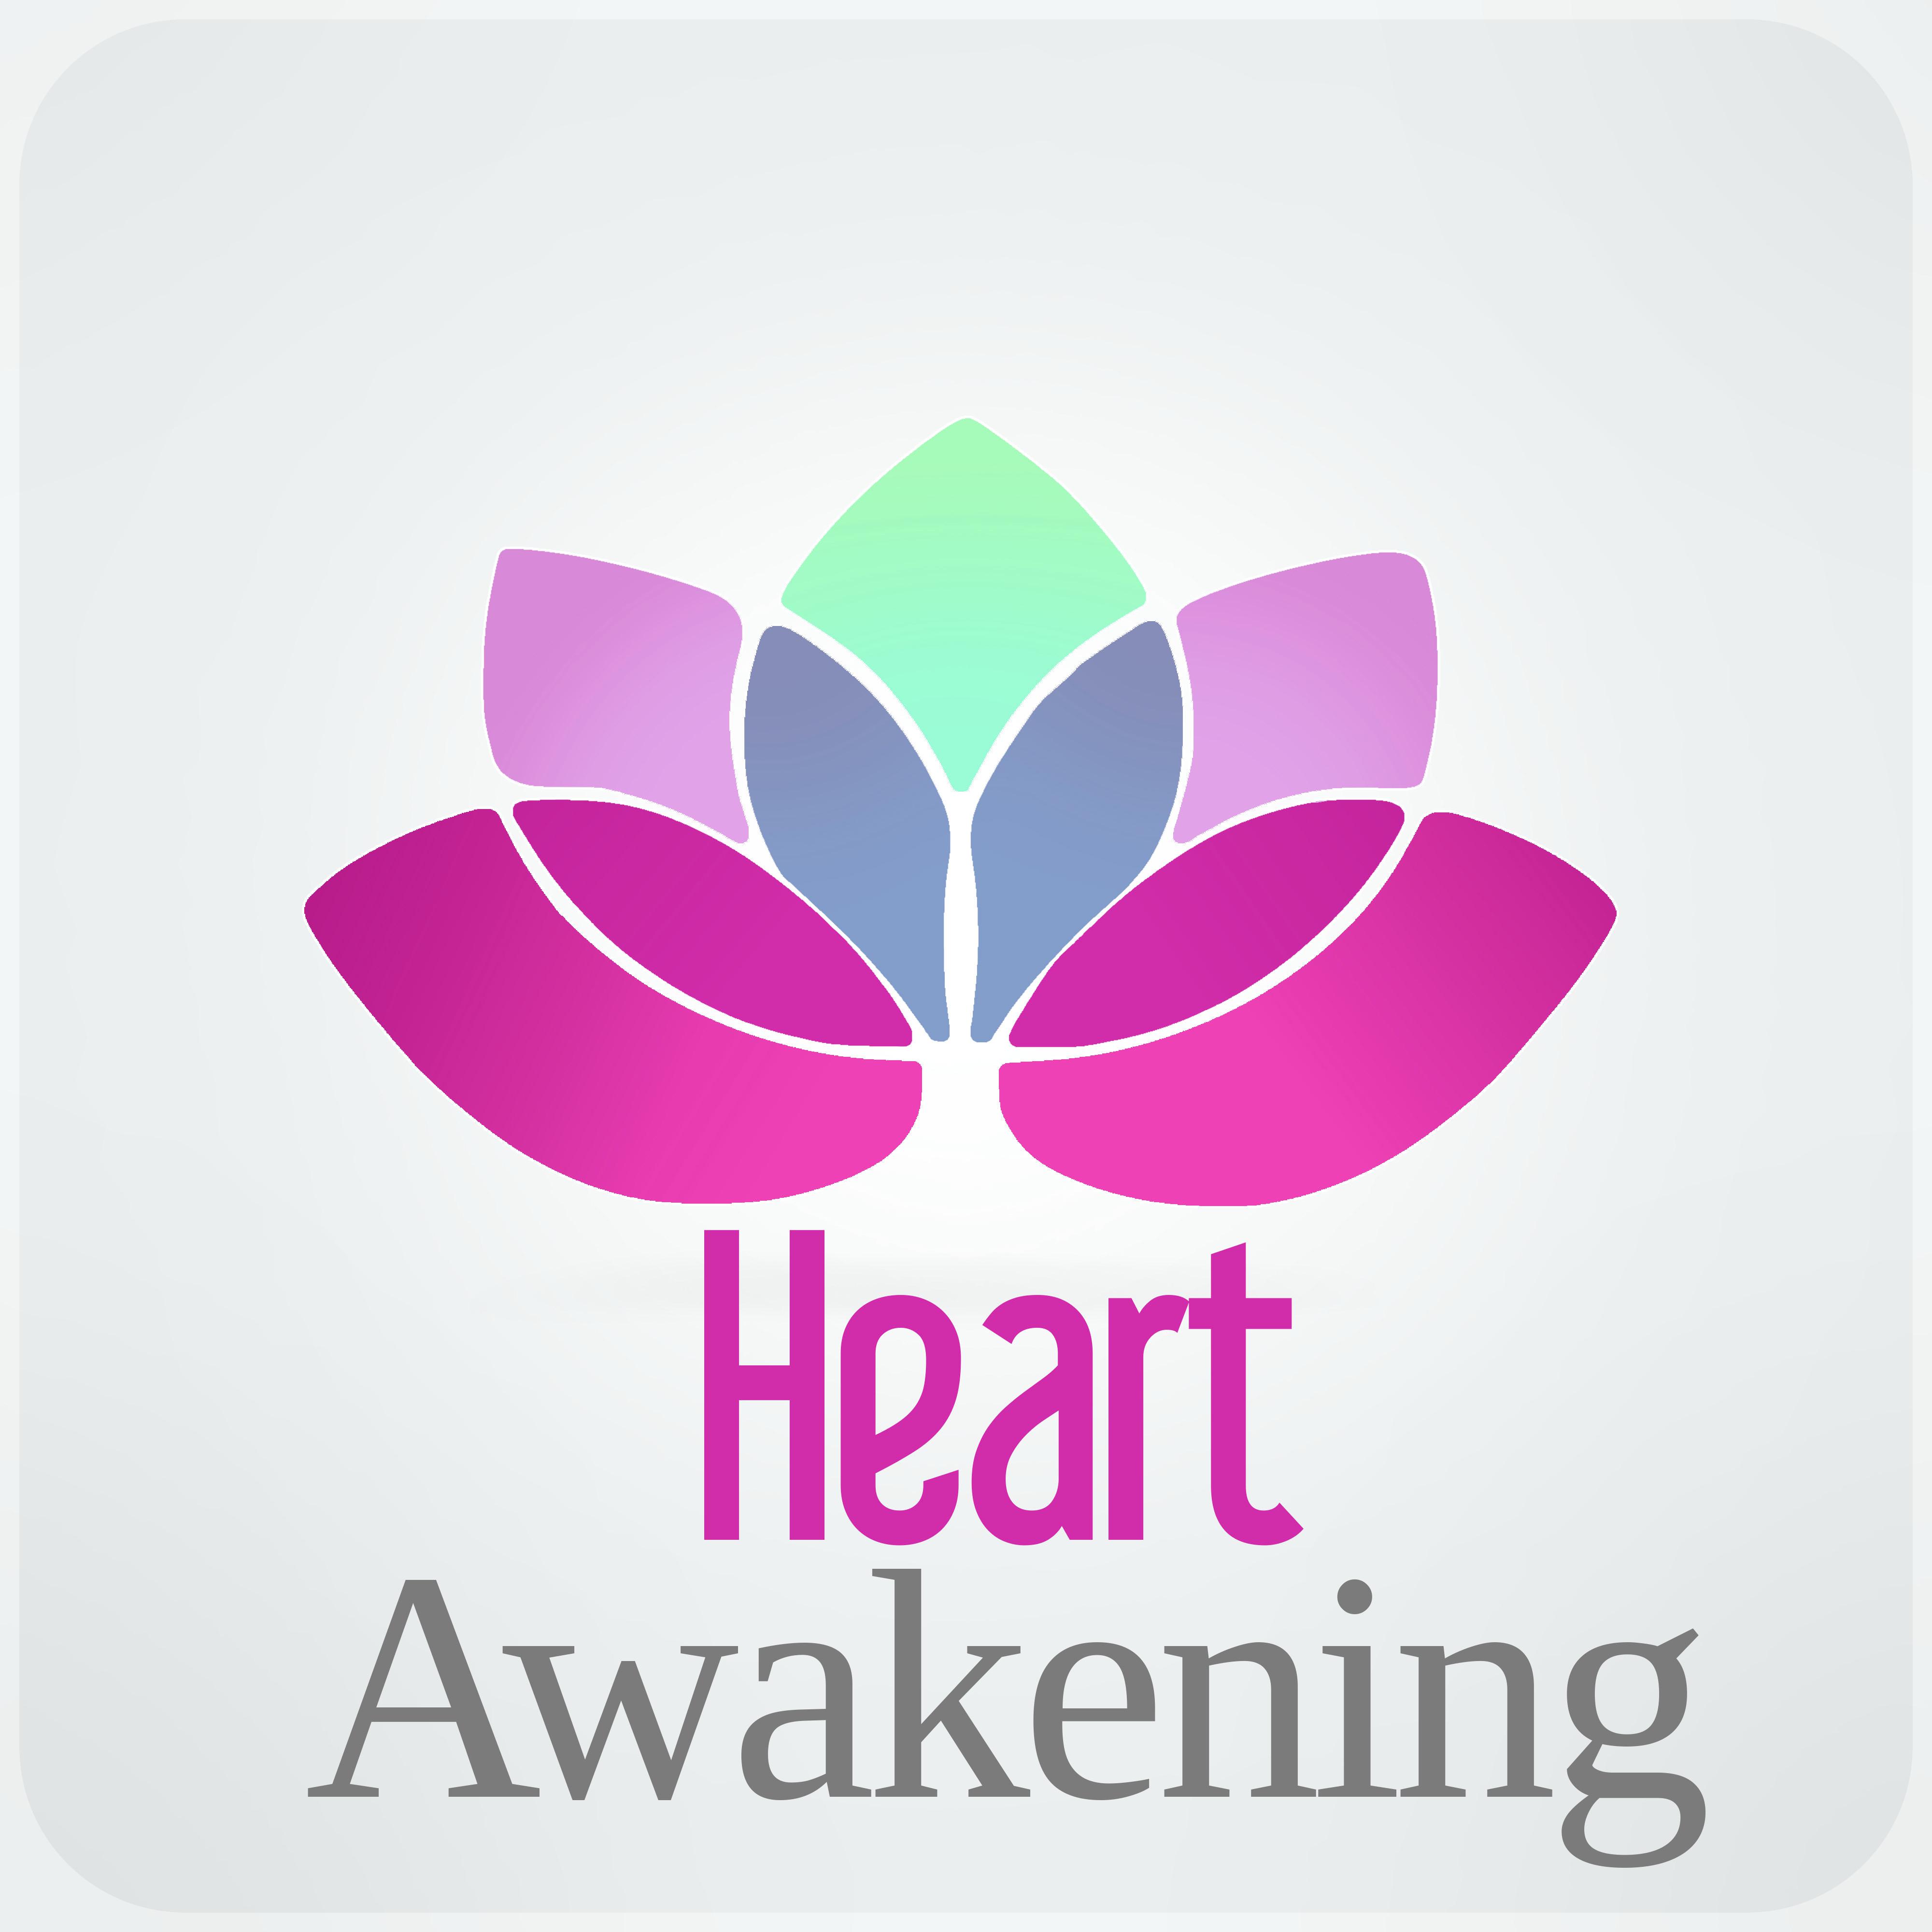 Awakenings (Morning Yoga)